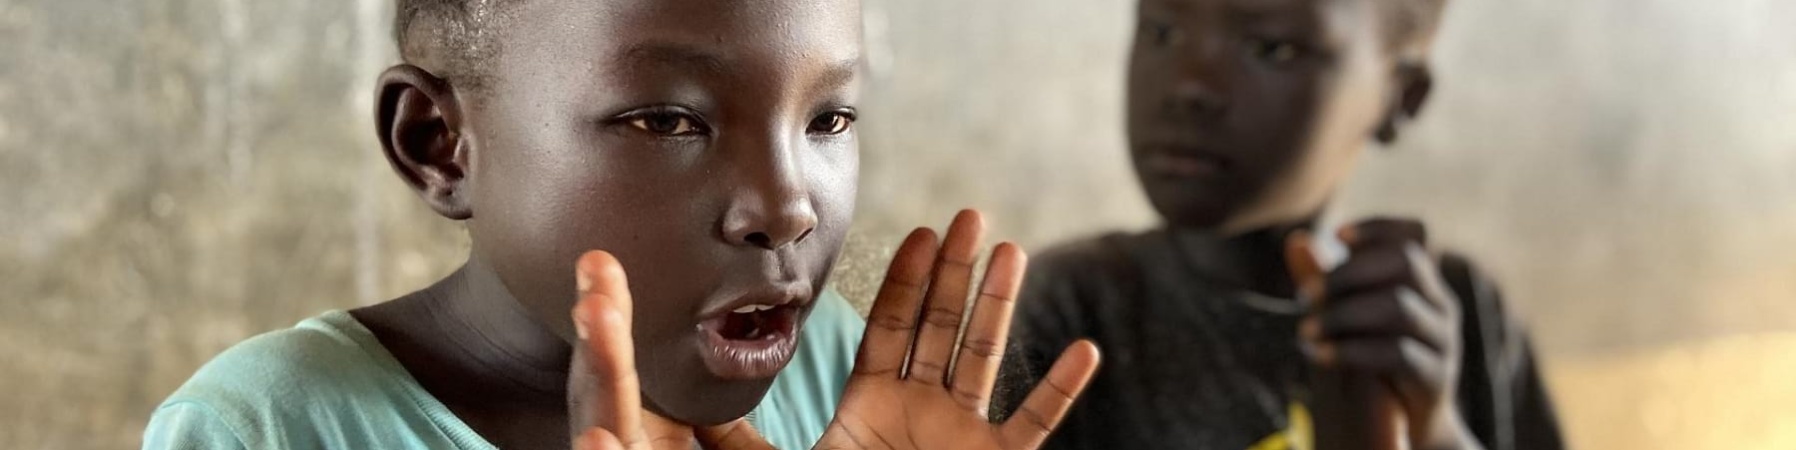 Un bambino nero sullo sfondo batte le mani mentre un bambino nero in primo piano fa un gesto con la mano poggiando i pollici sotto il mento con la mano aperta